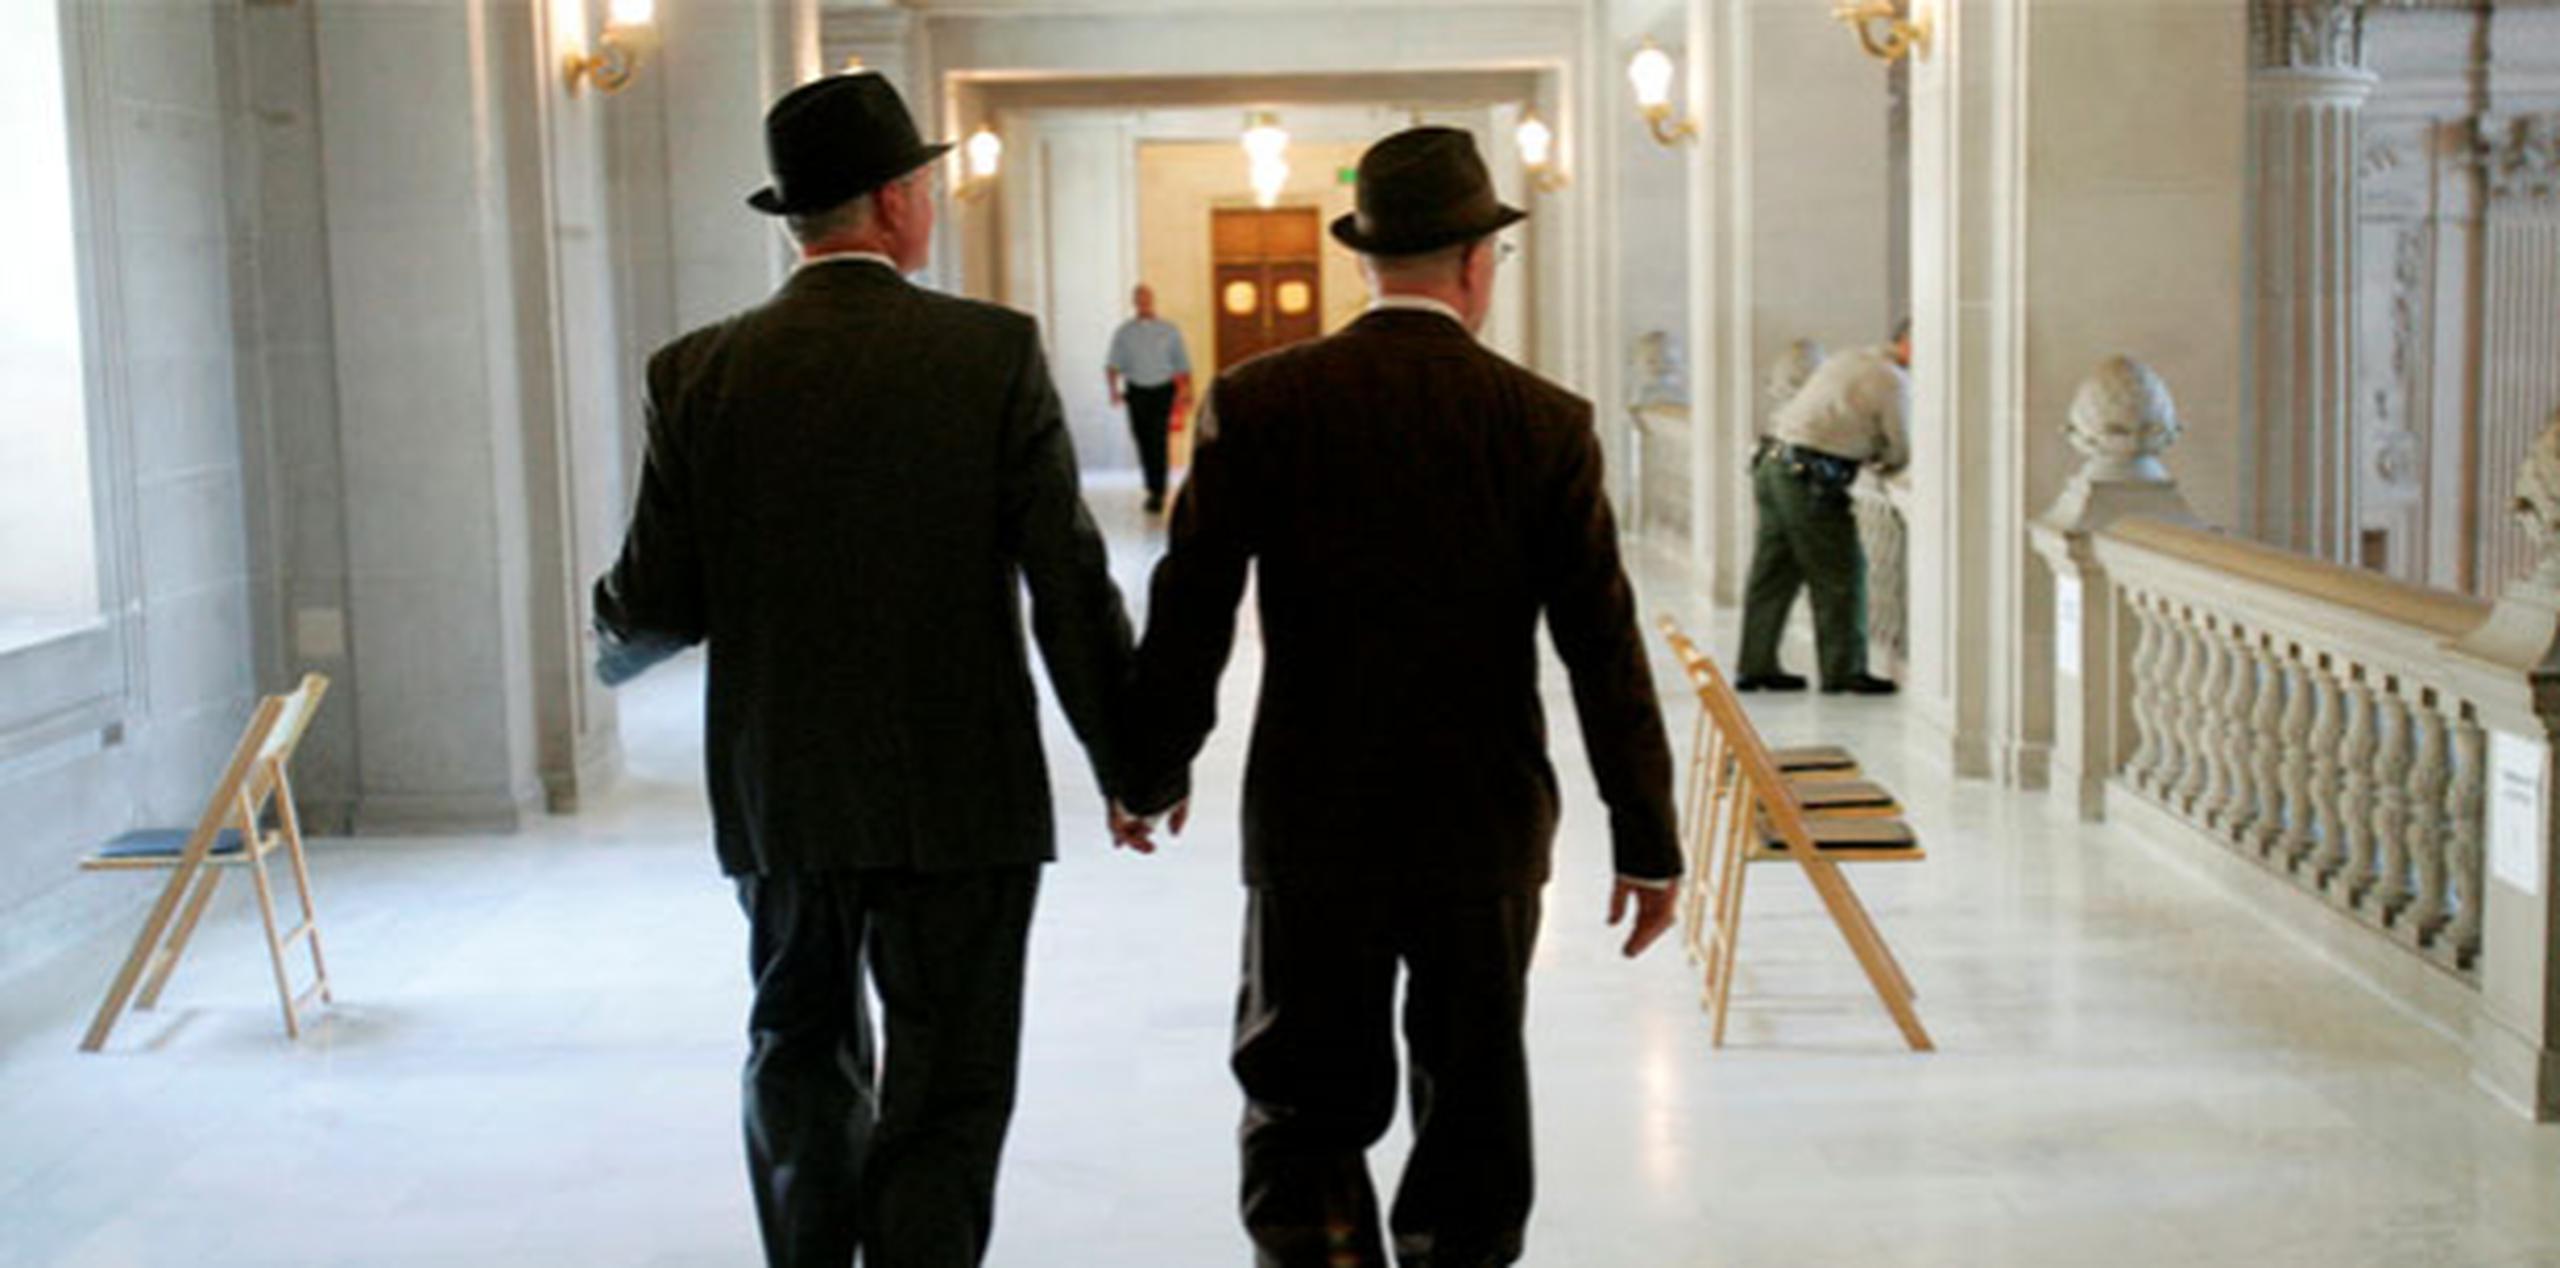 El matrimonio homosexual se legalizó en Portugal en 2010, también con los socialistas en el poder, aunque entonces sin derecho a adopción. (Archivo)